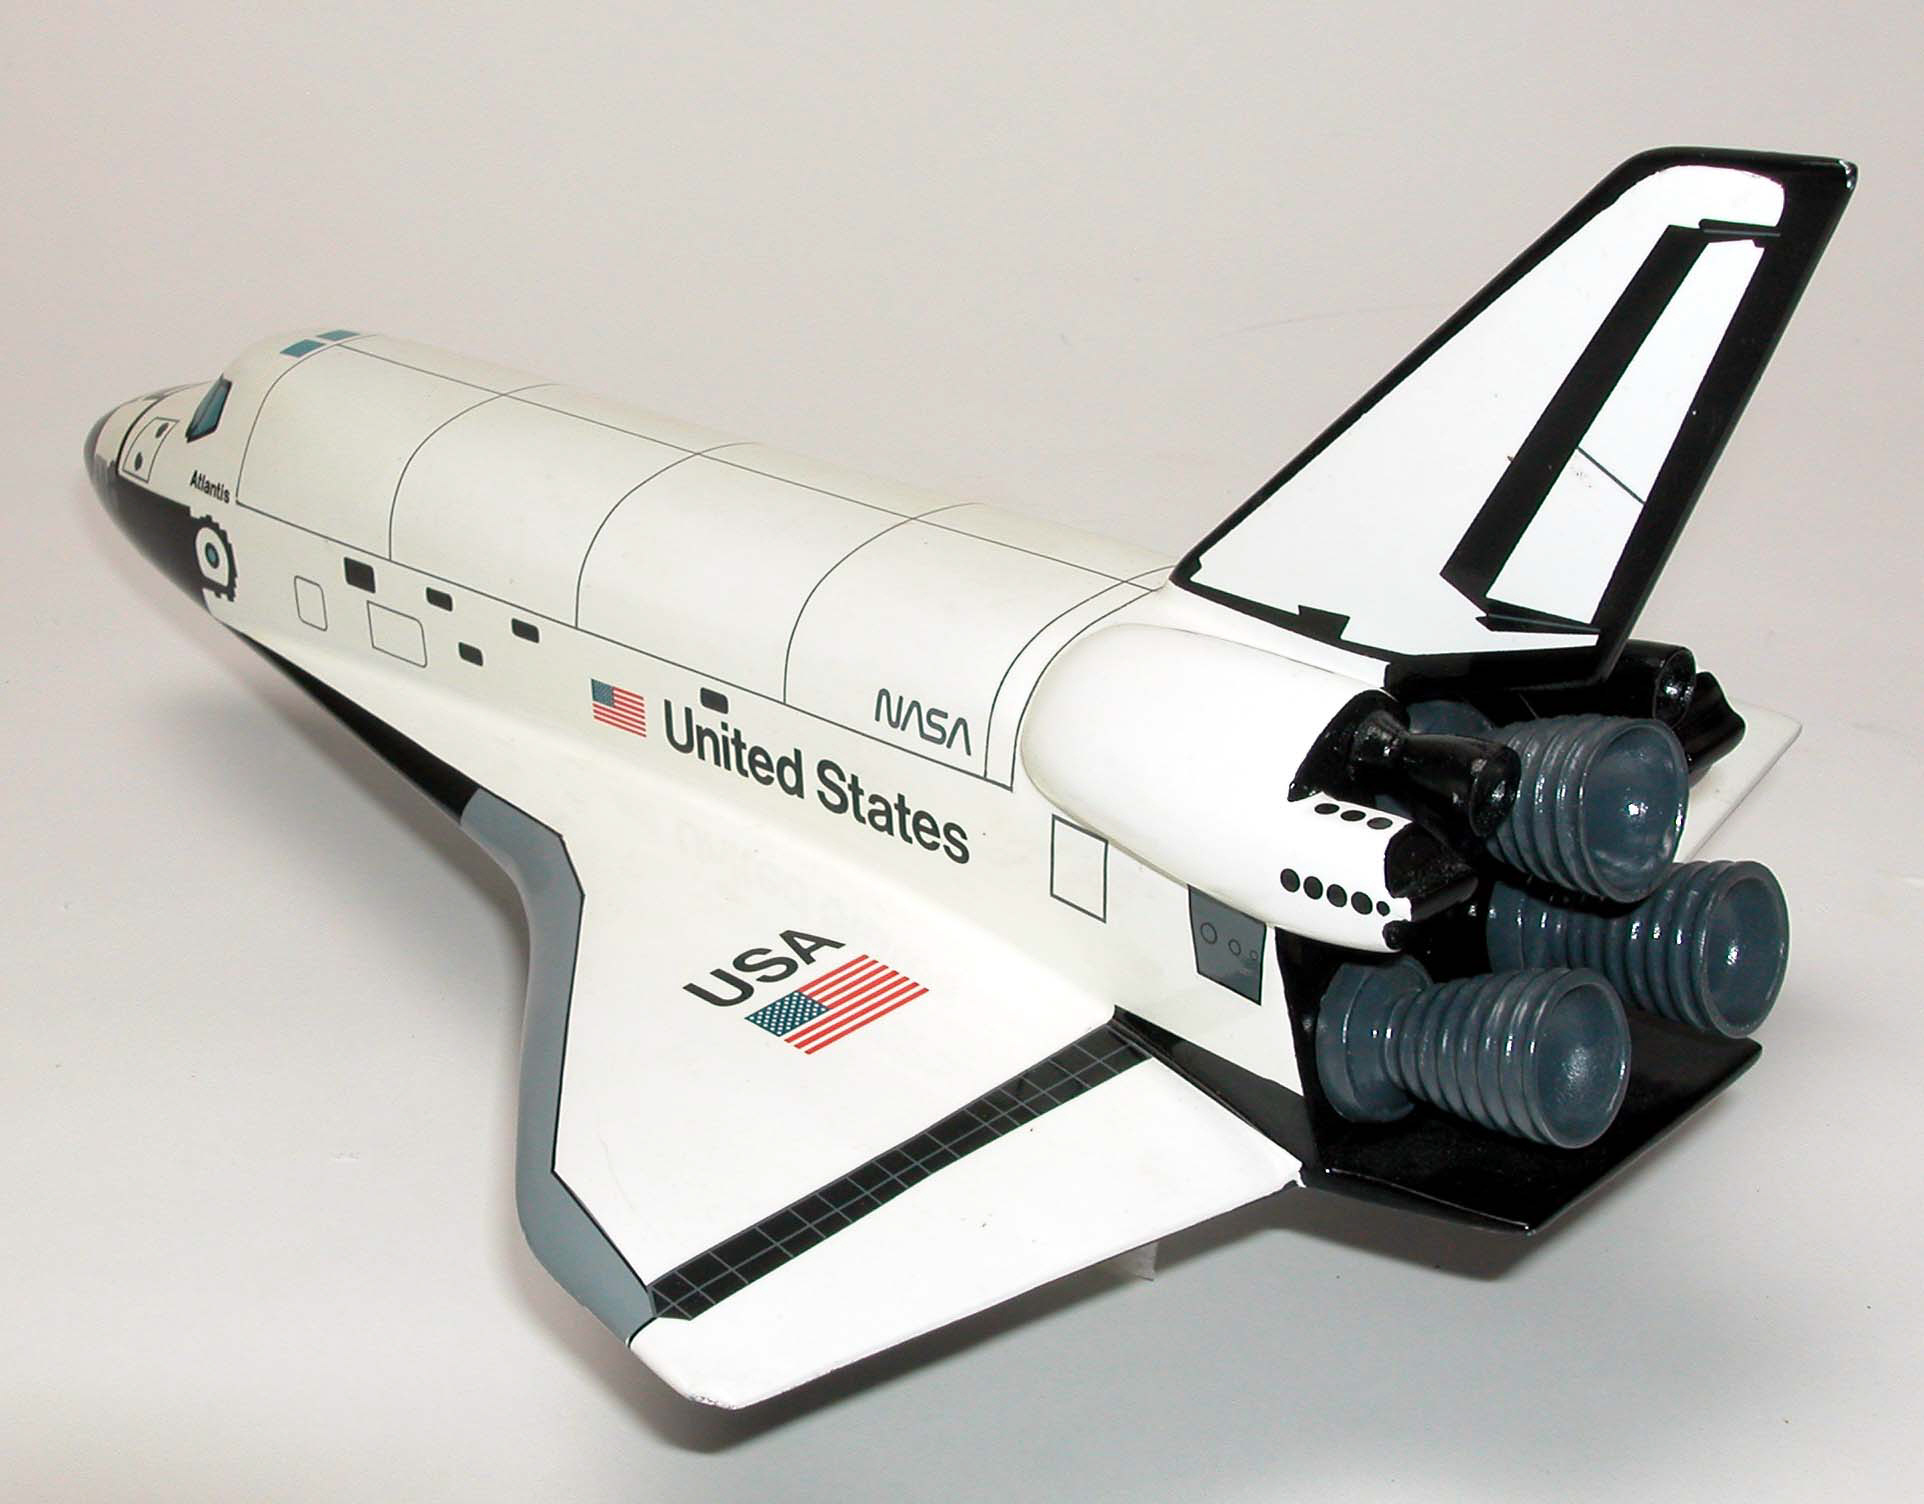 space shuttle orbiter names